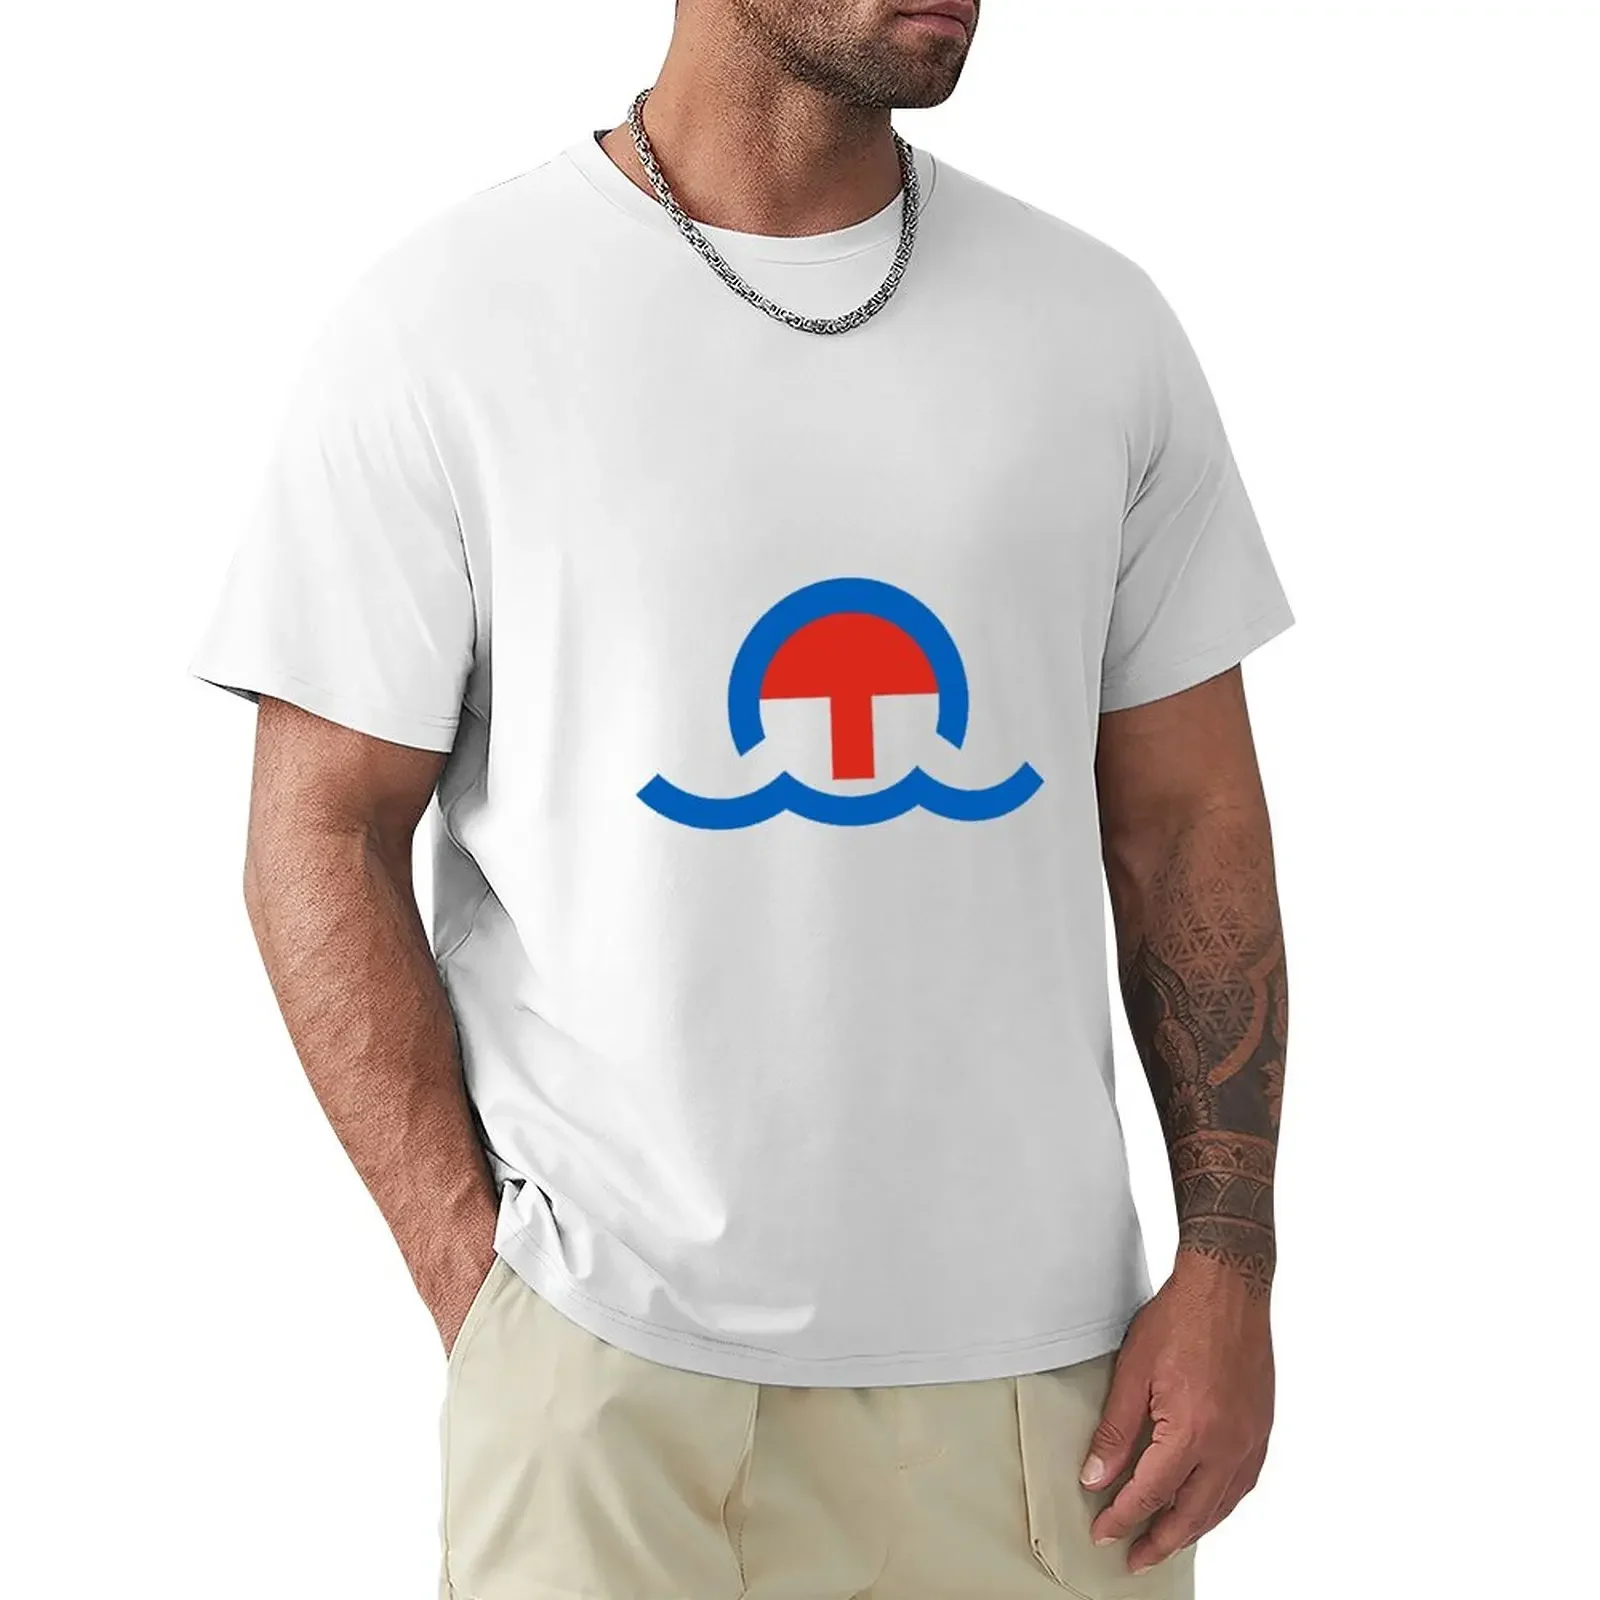 

Футболка с логотипом компании Great Ocean Tug & спасательная компания, футболки от пота, летняя одежда, черные футболки для мужчин